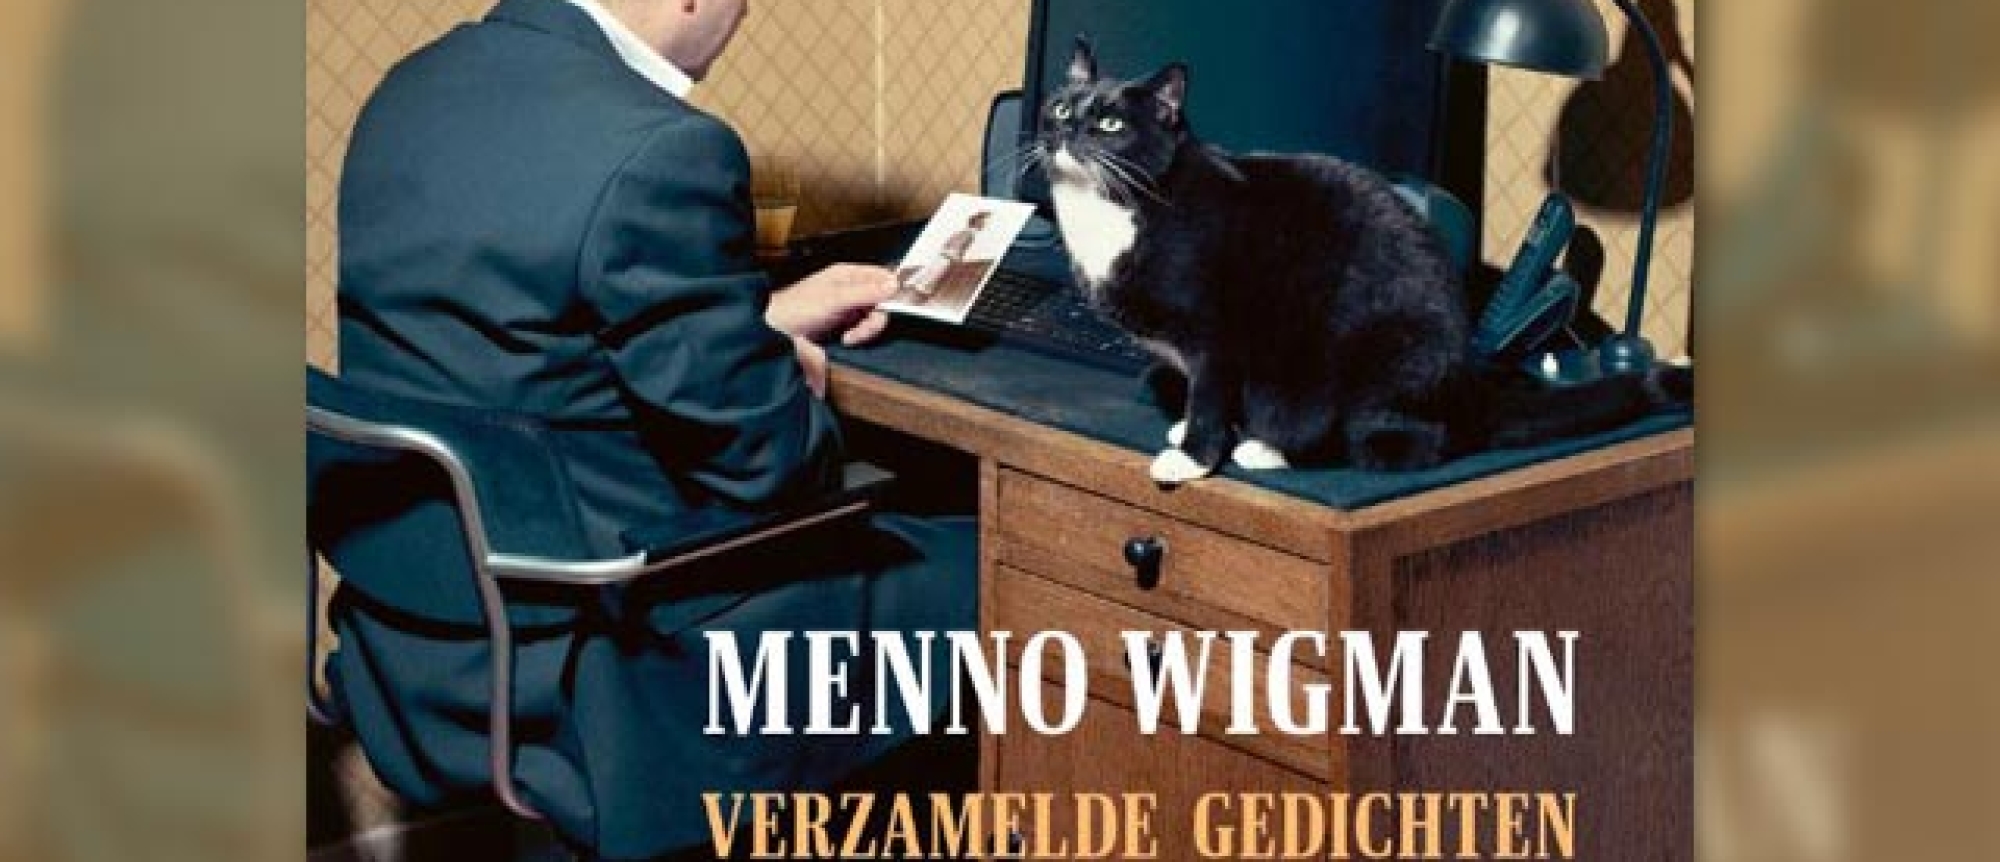 Menno Wigman's Verzamelde gedichten DWDD Boek van de Maand